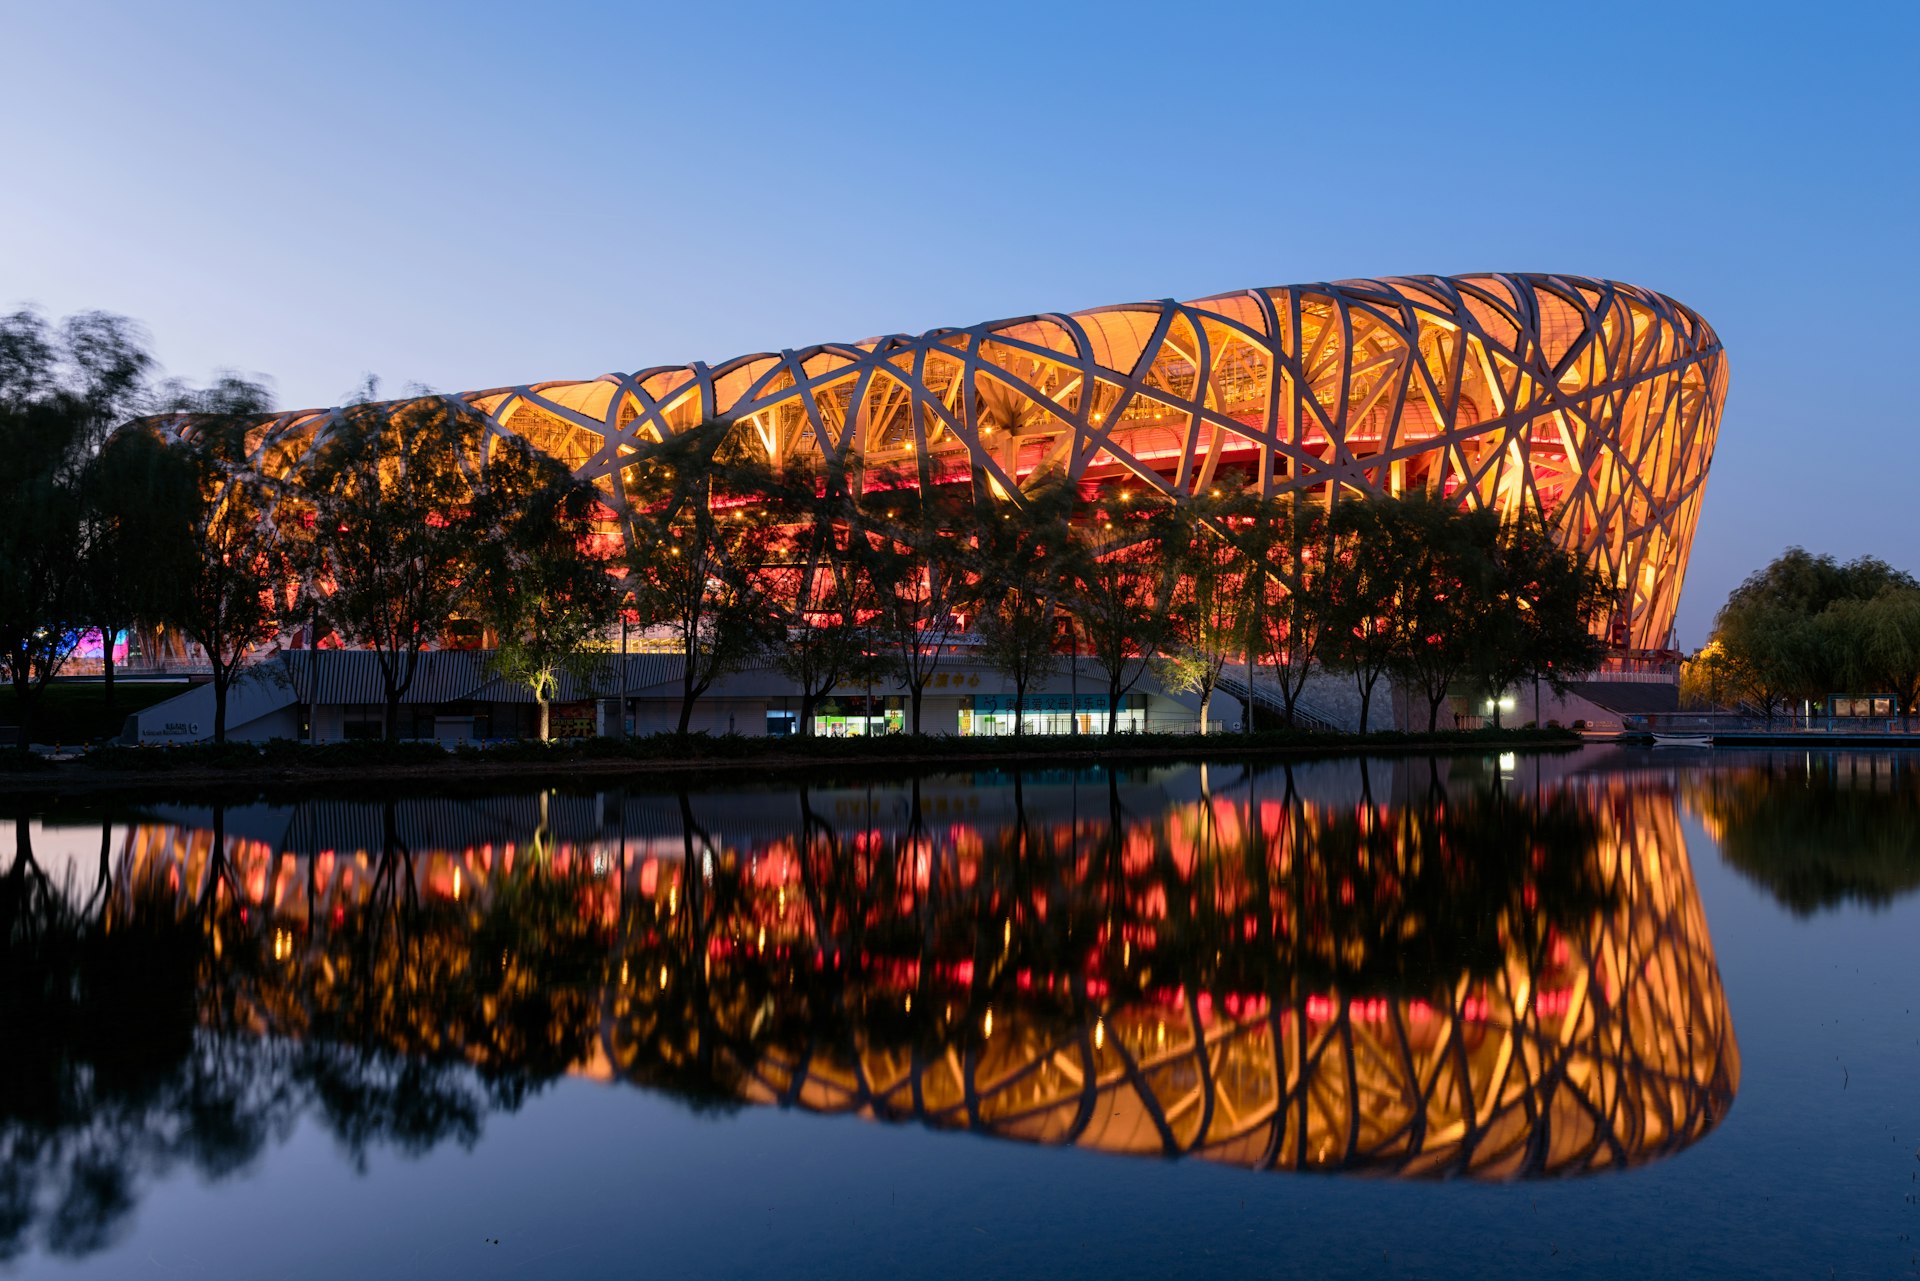 The “Birds Nest” Stadium at night, Beijing, China